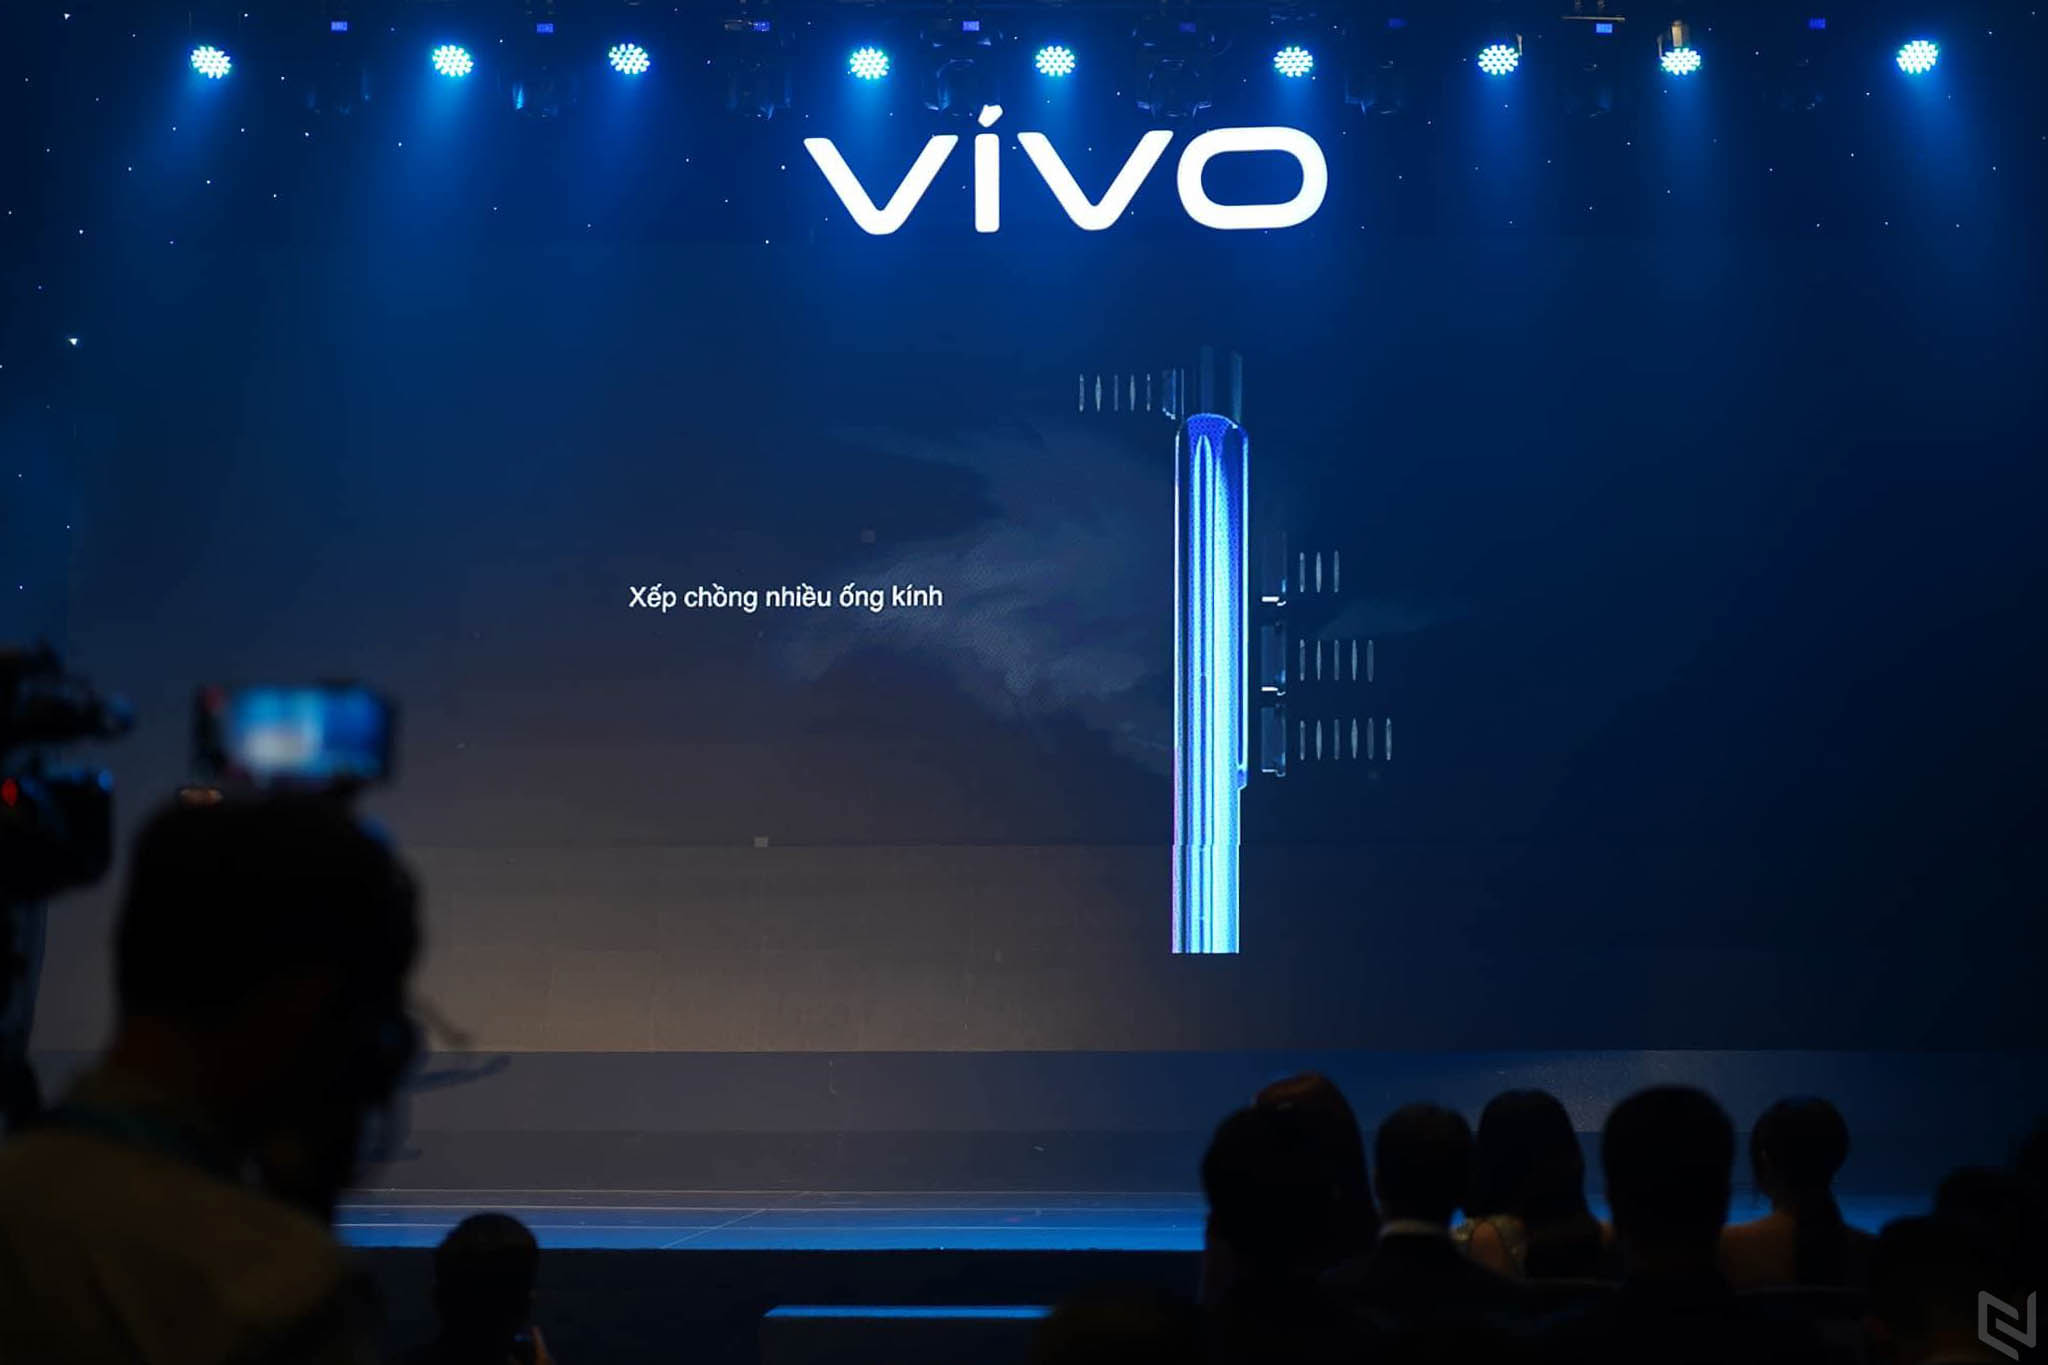 Ra mắt Vivo V15 tại Việt Nam với camera trước tàng hình 32MP, màn hình Ultra FullView, giá 7,990,000đ